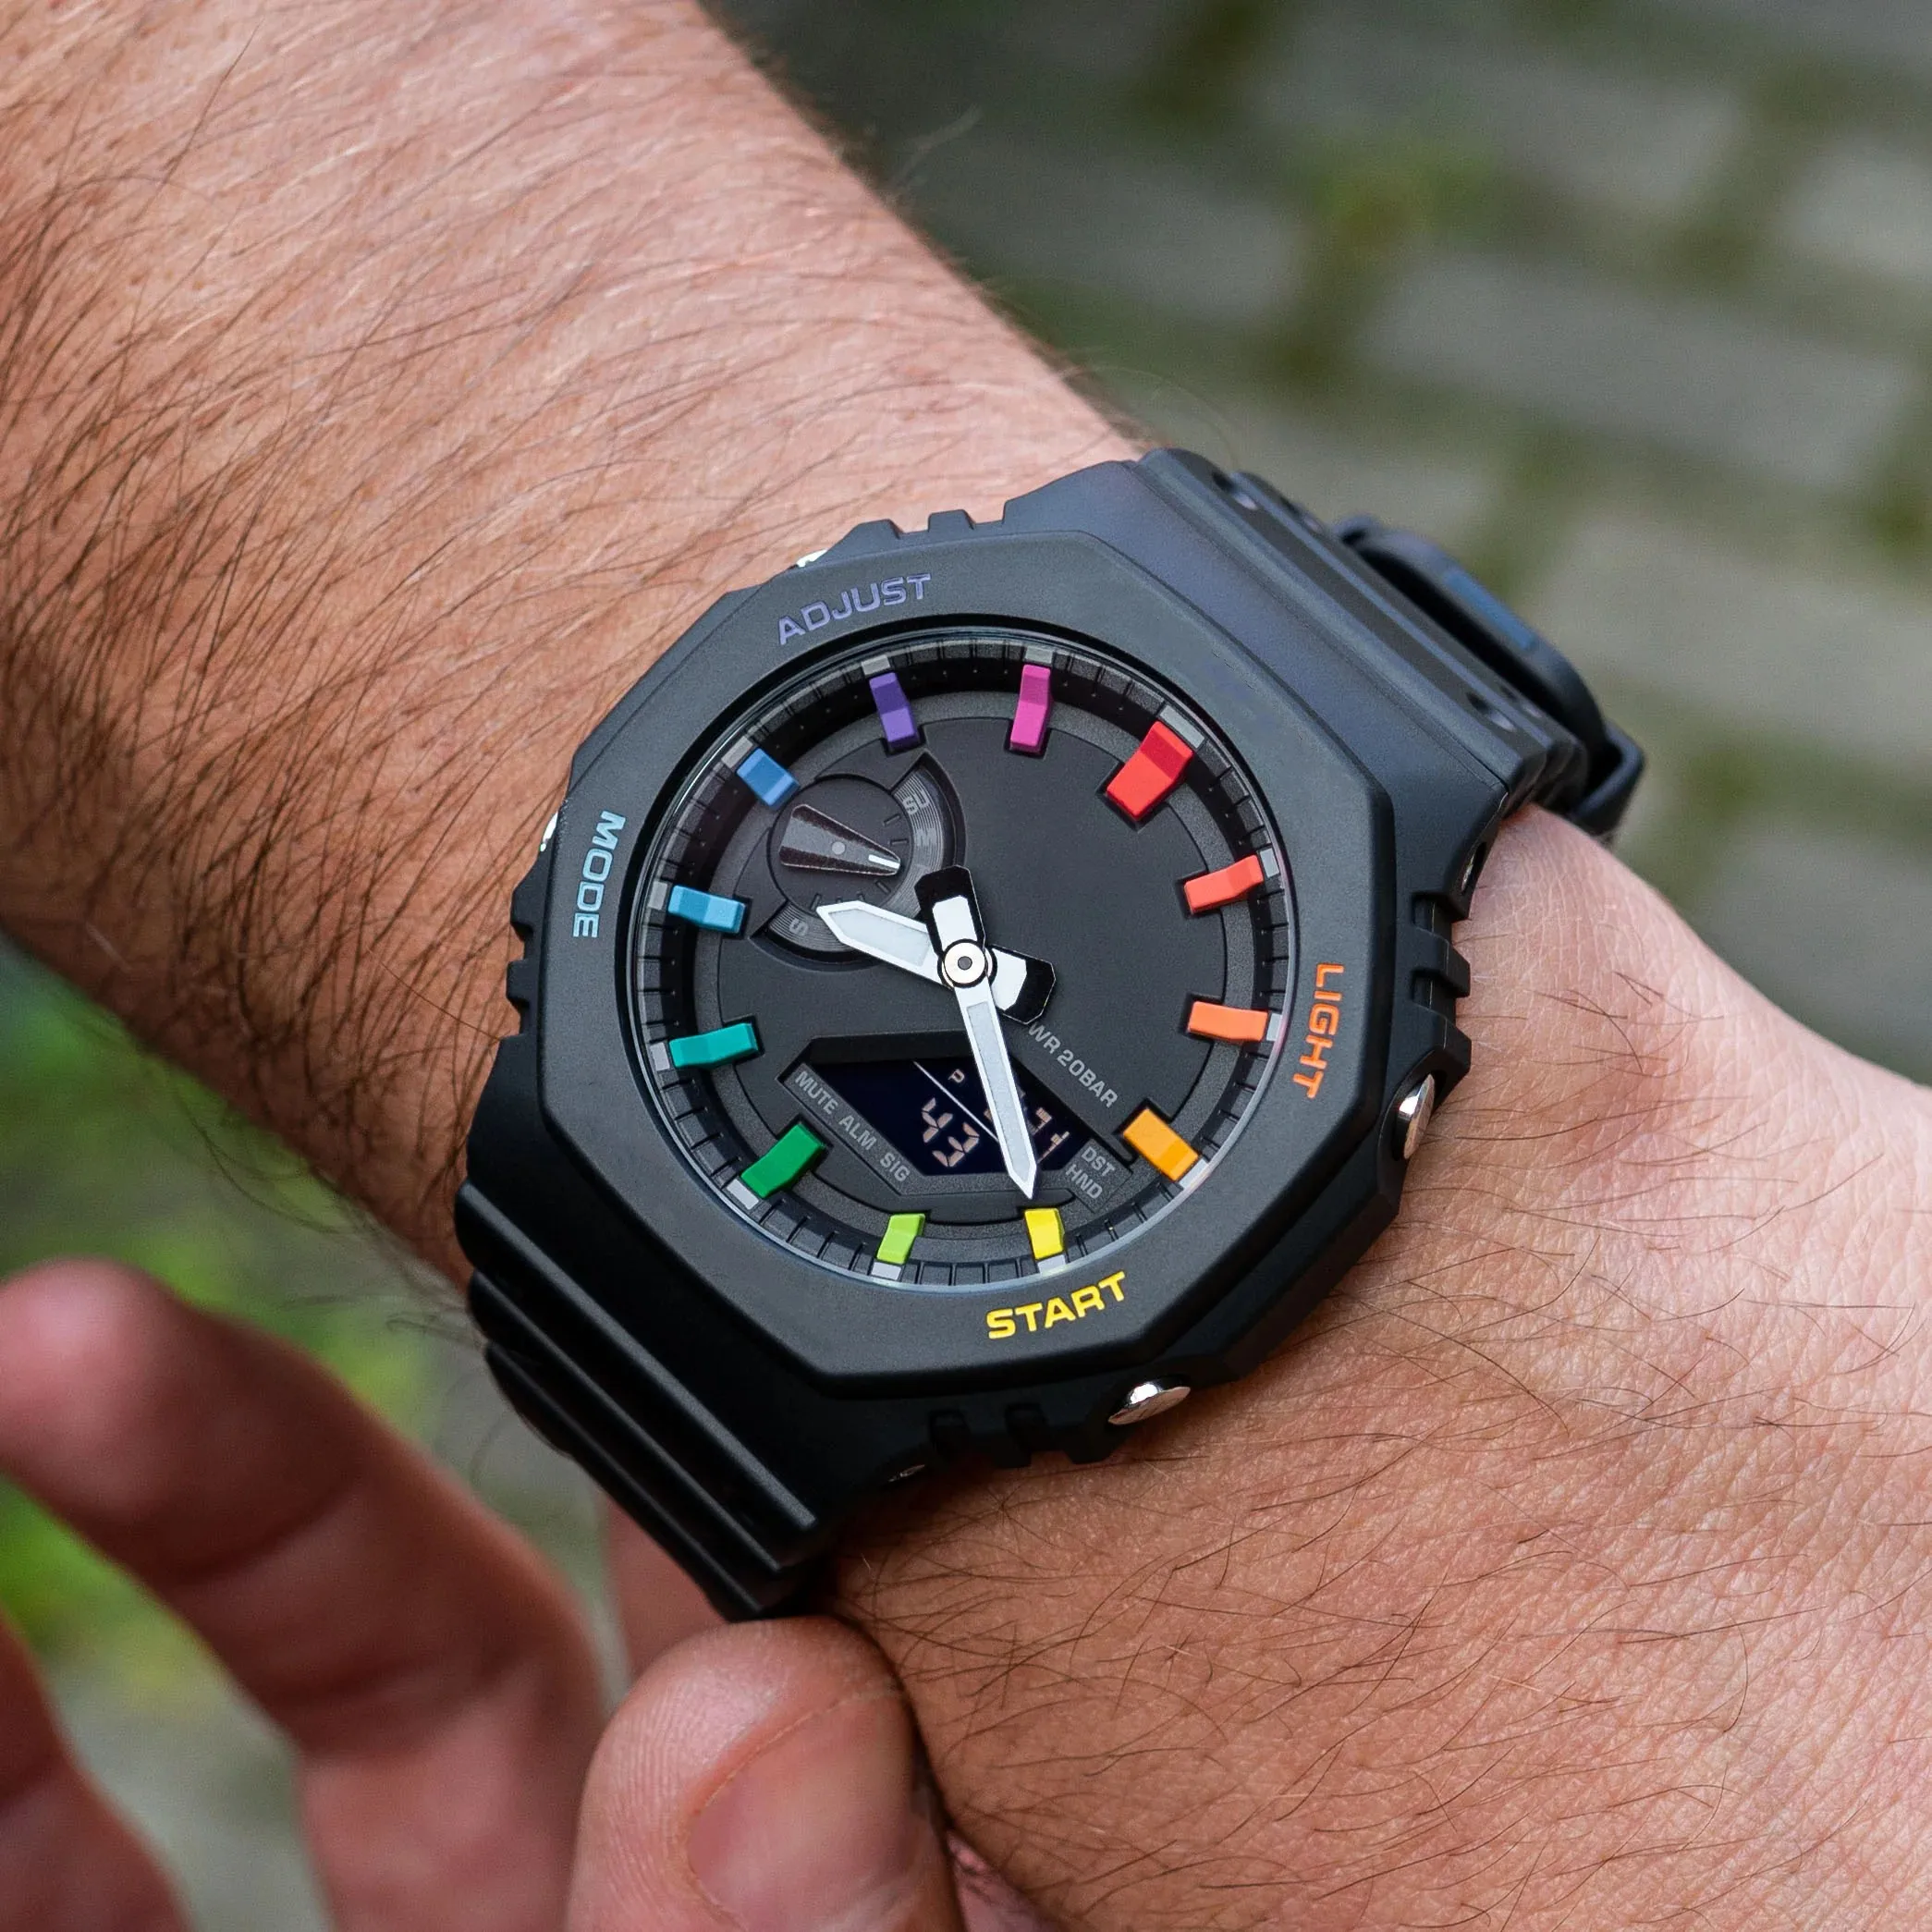 

Оригинальные часы Shock, Цифровые Спортивные кварцевые мужские часы 2100, полнофункциональные часы со светодиодной подсветкой черного цвета, радужная дубовая серия